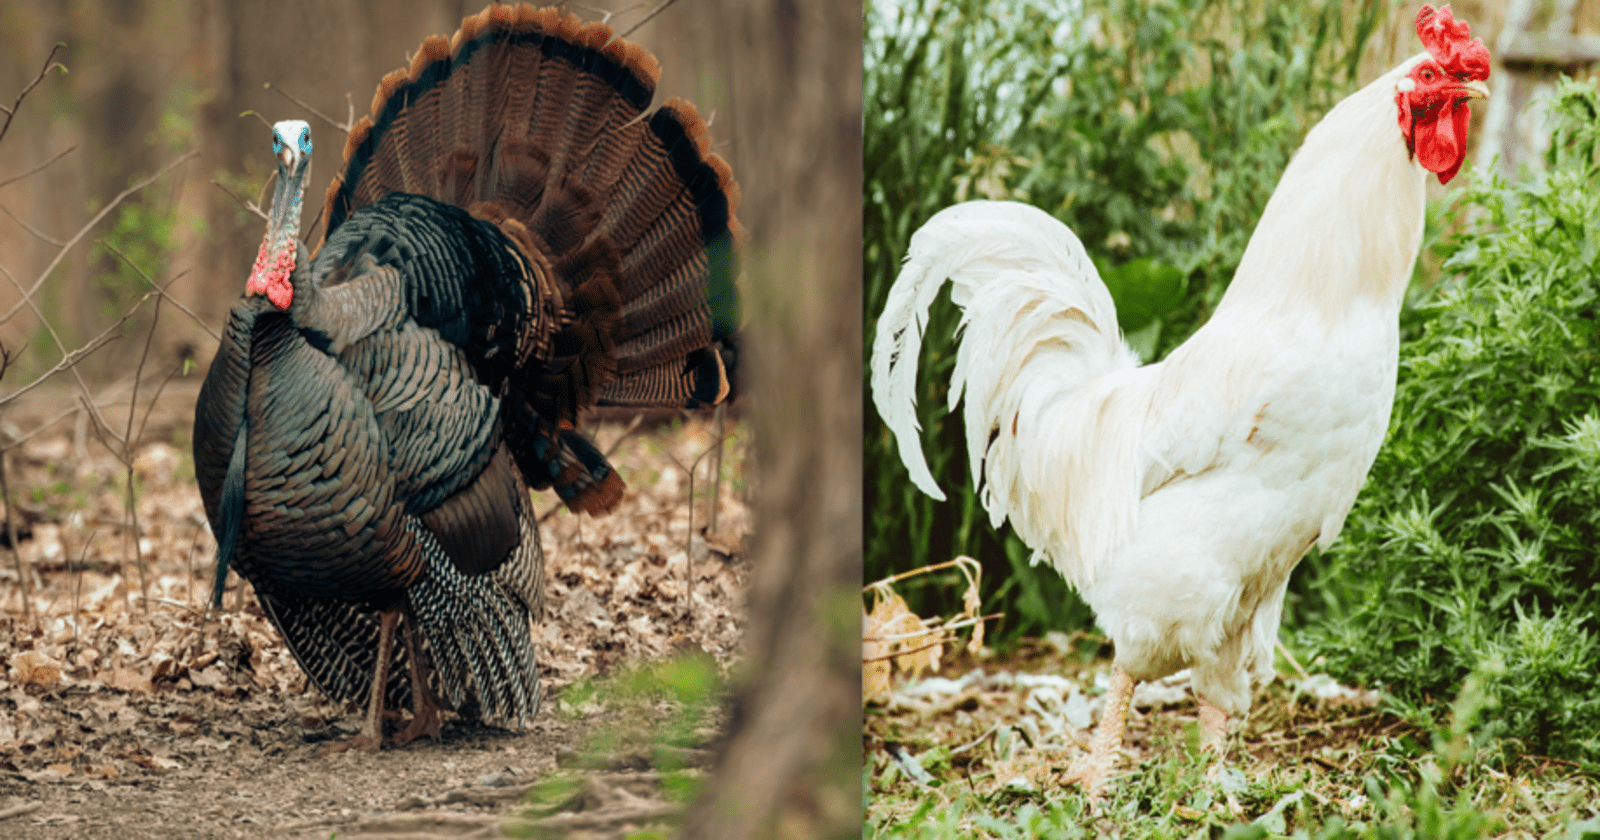 Turkey vs chicken breast ground: Health awareness